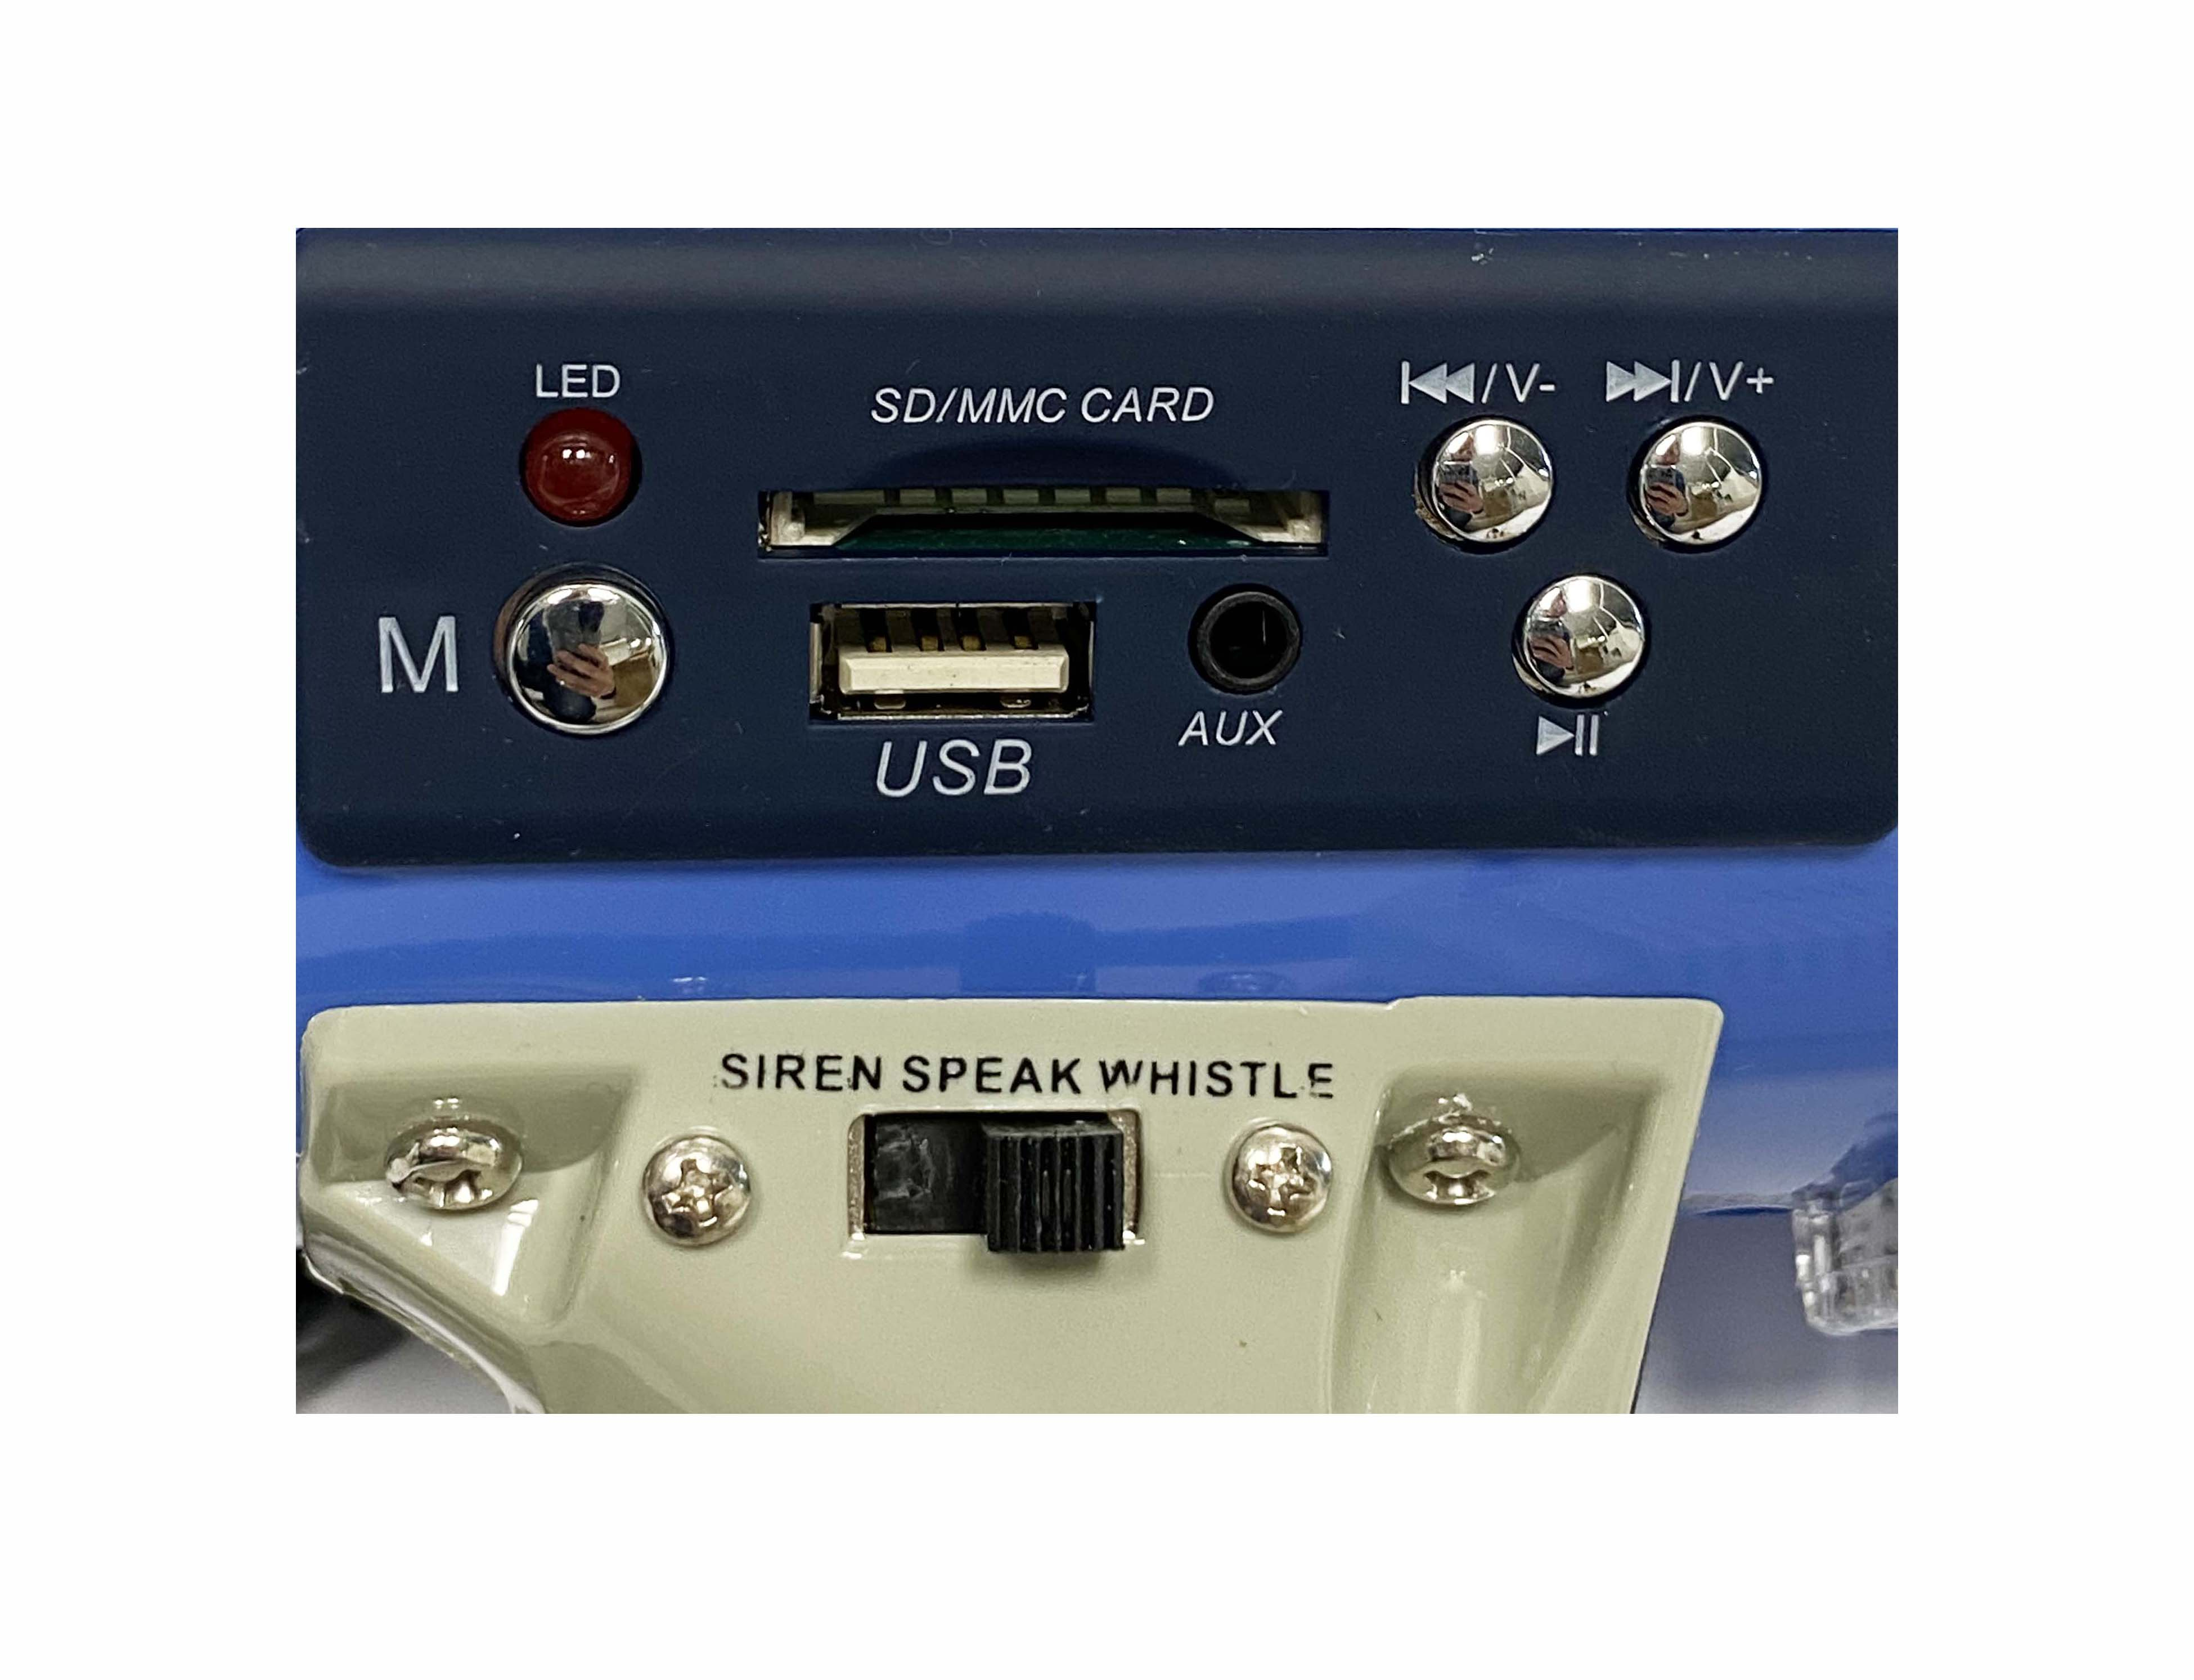 Porte-voix avec sirène et enregistrement - USB/TF- 30W